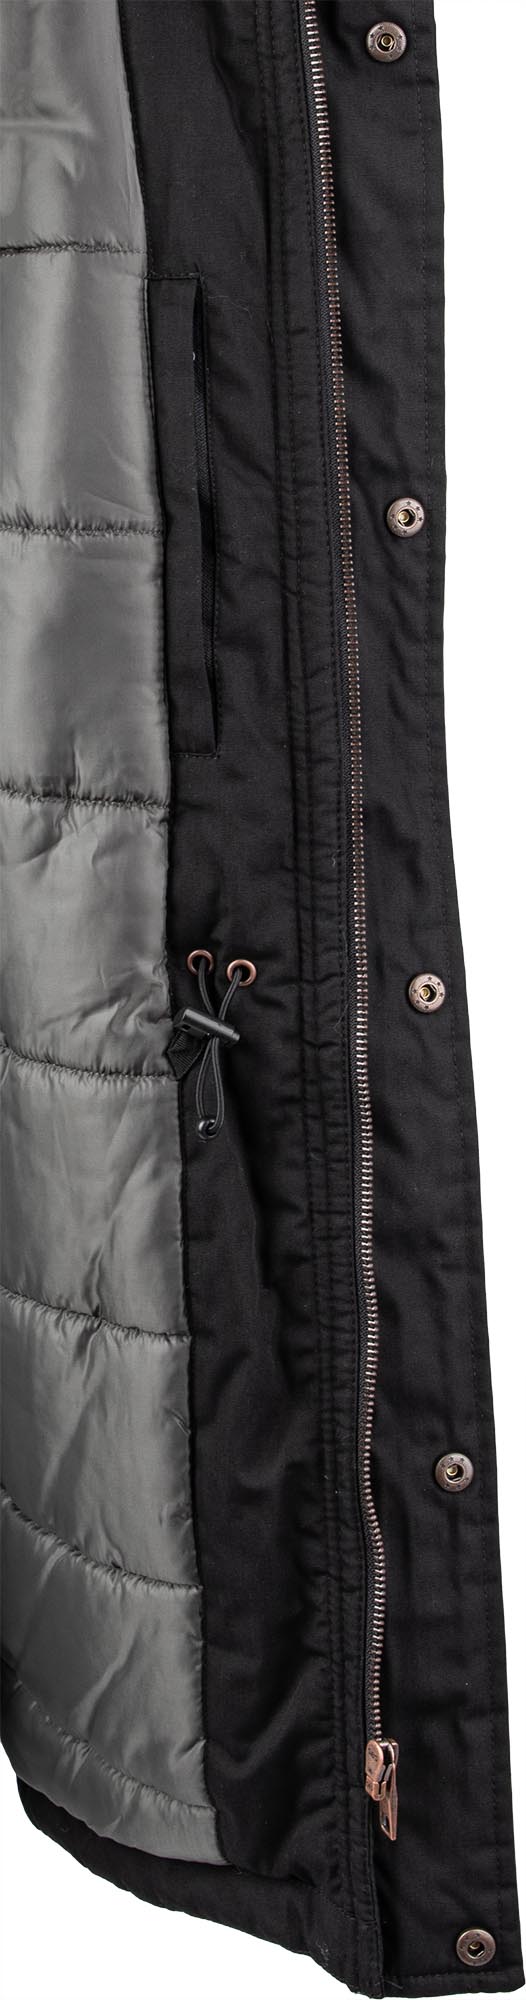 Men's jacket with warm padding